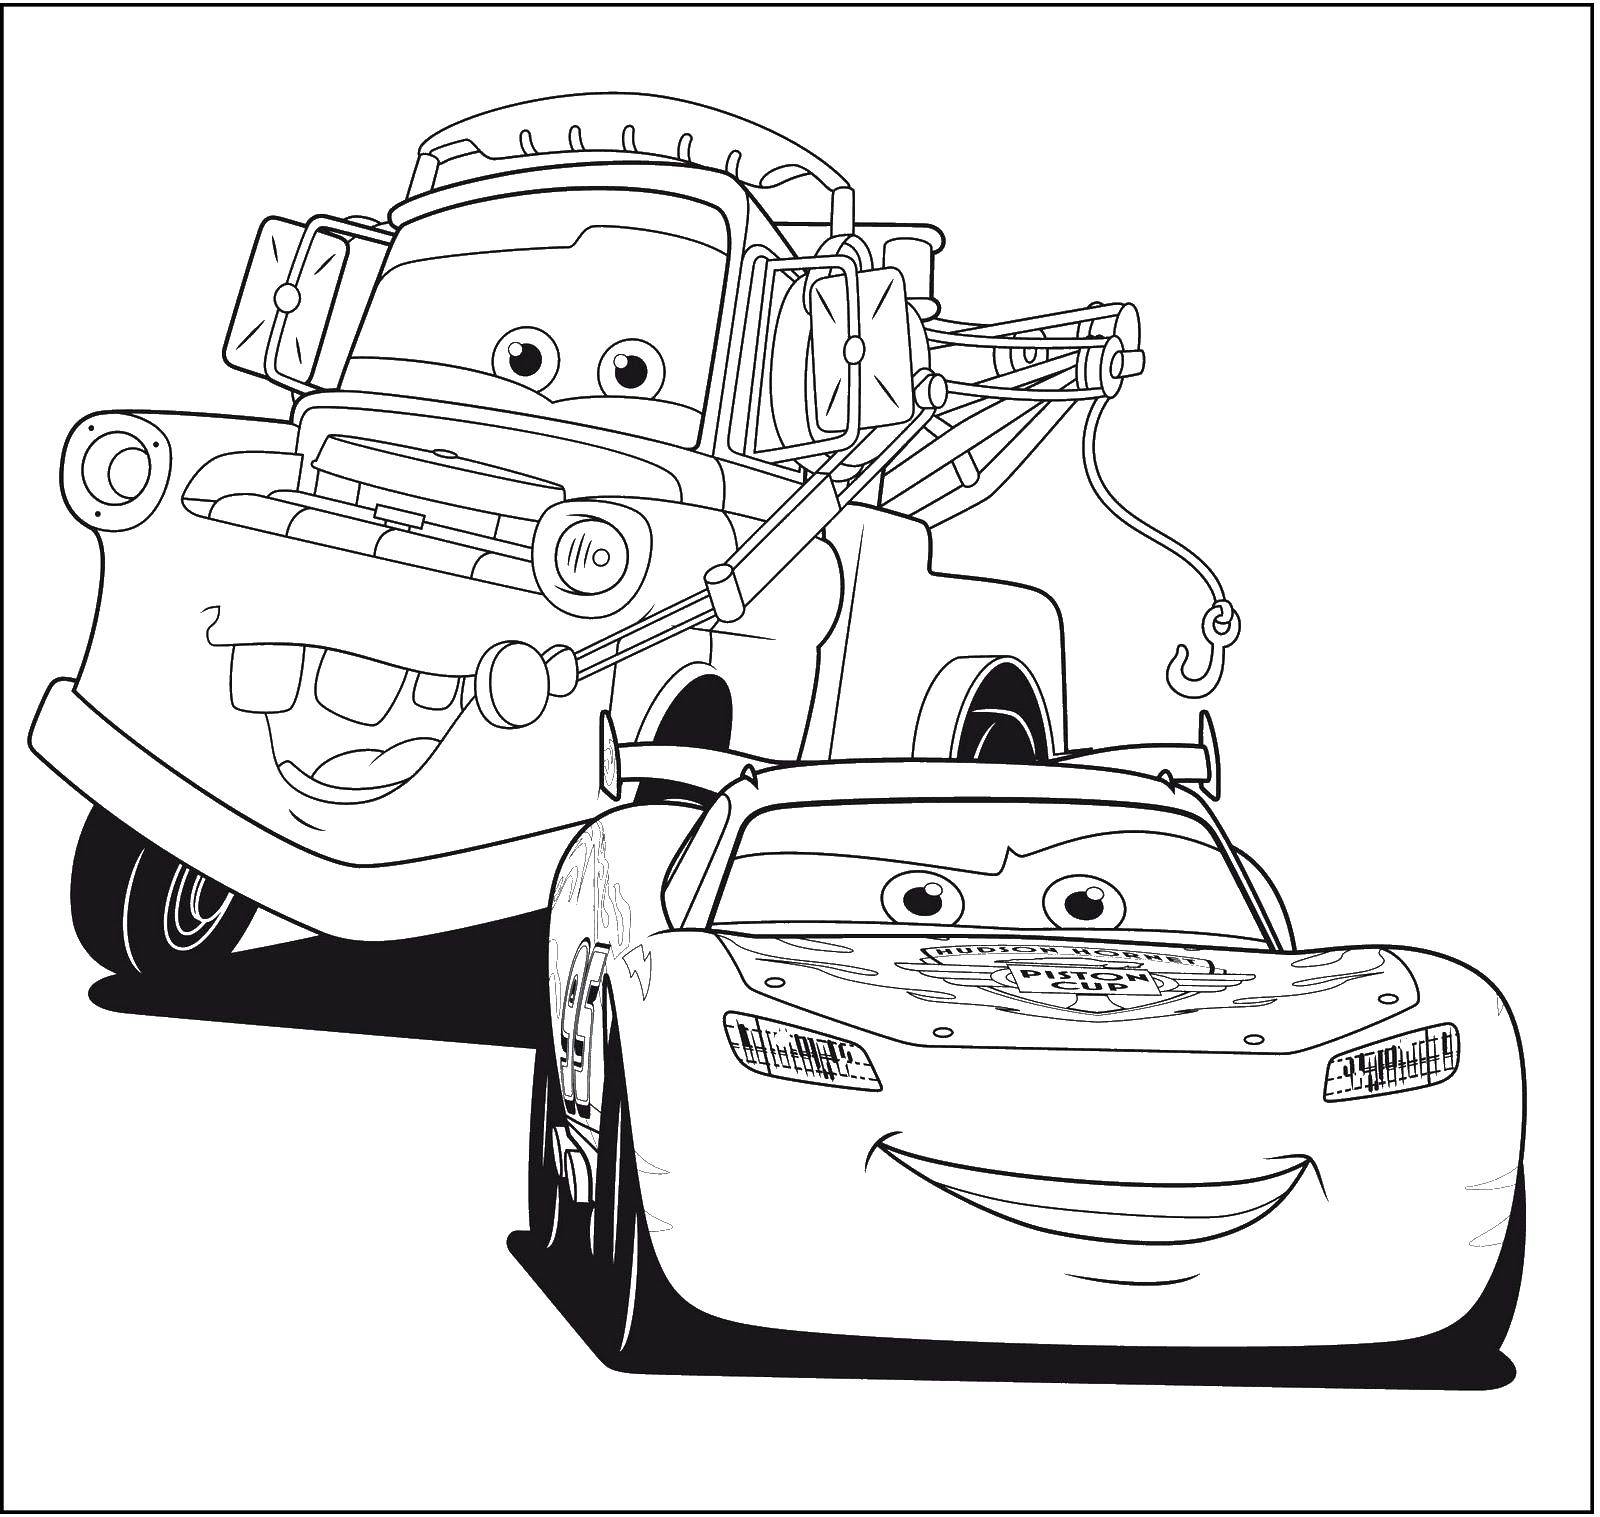 Раскраскидля мальчиков по мультфильму тачки  Машинки из мультфильма тачки 